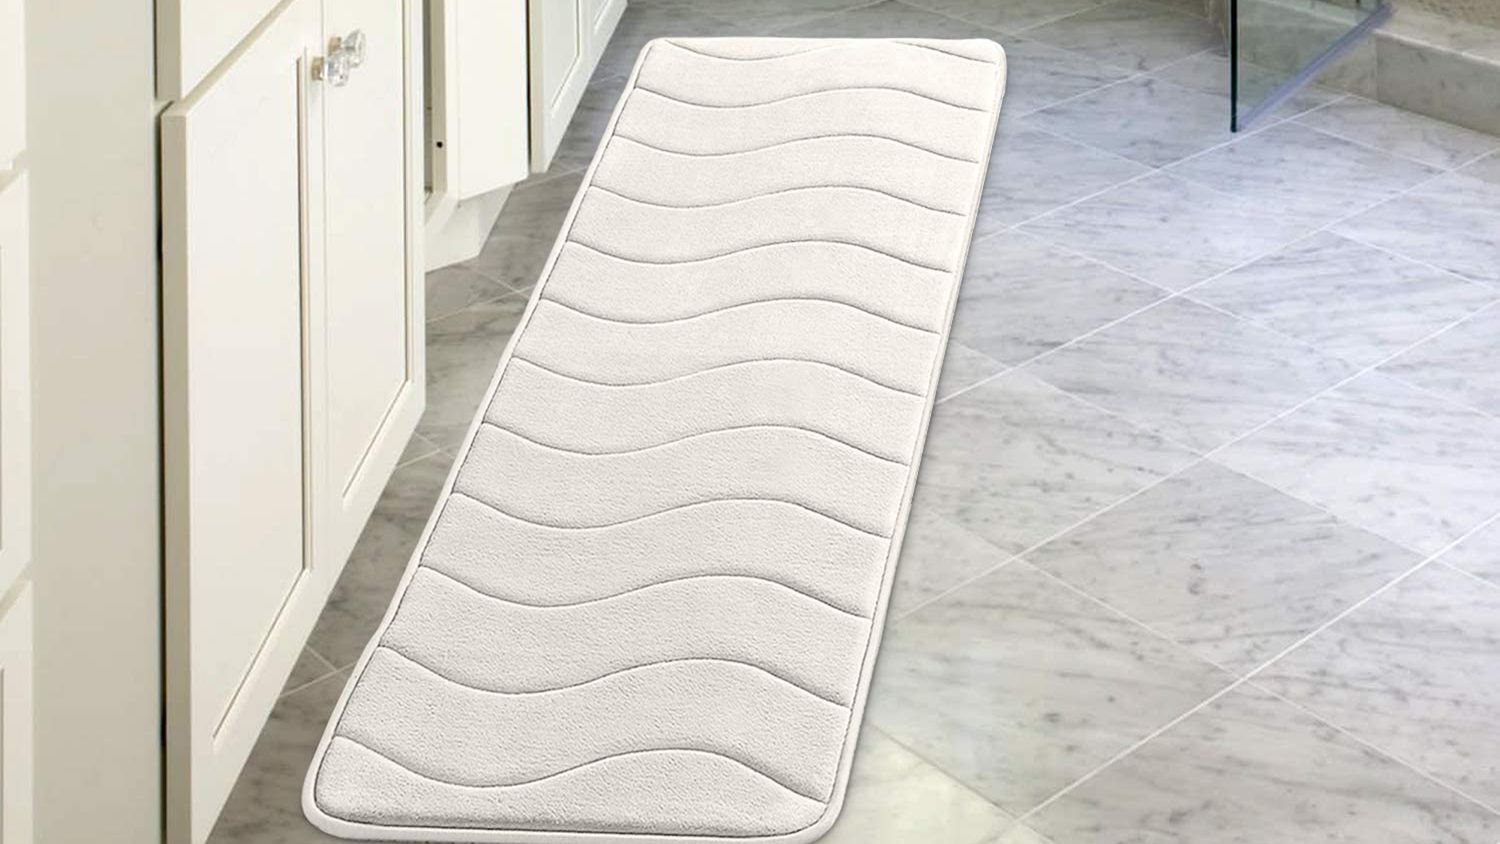 New Floor Non-slip Door Carpet Memory Foam Bath Mat Bathroom Kitchen Decor 